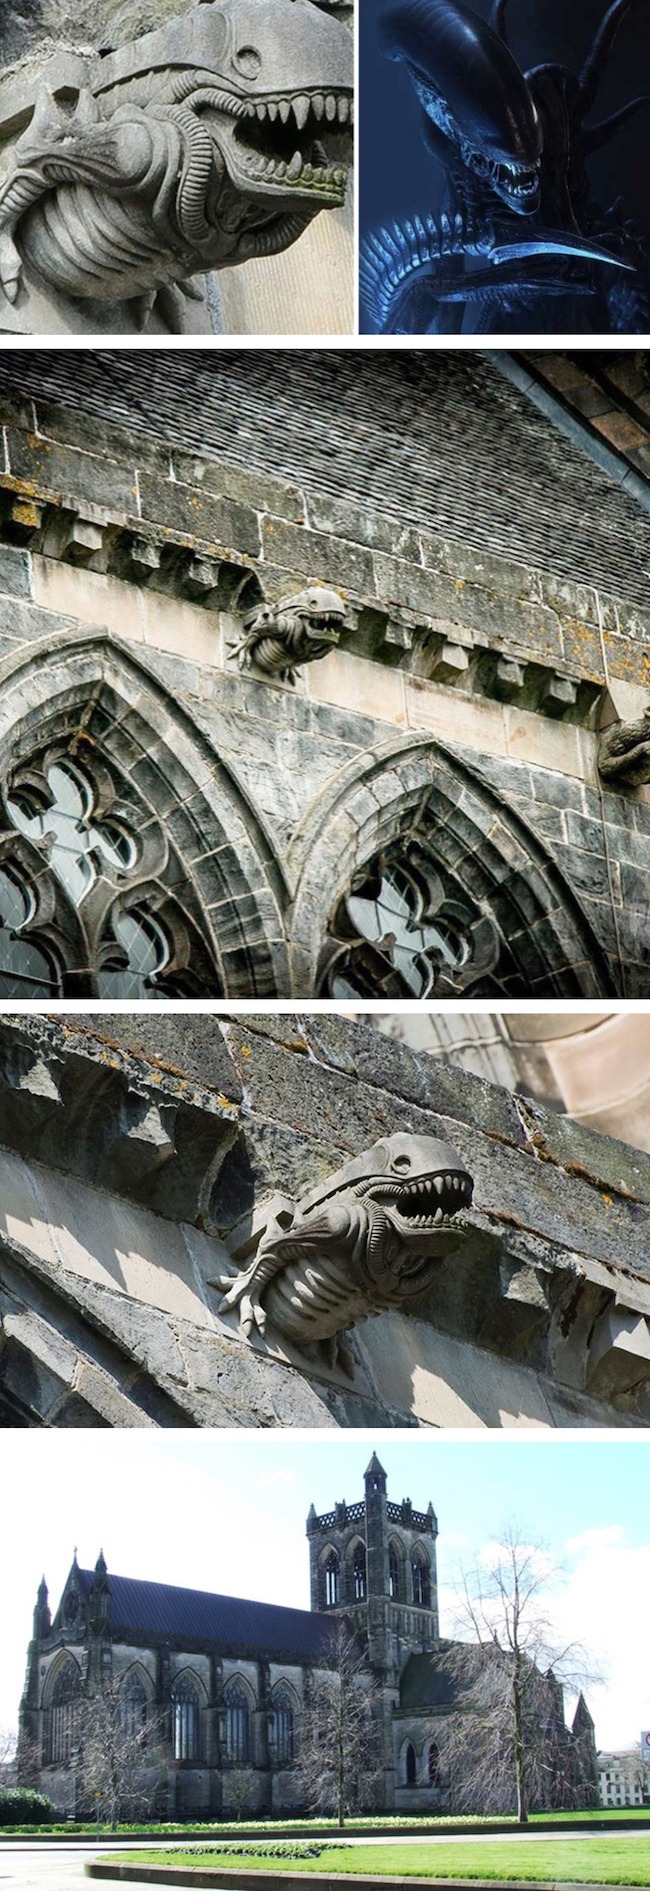 Настоятель аббатства XII века рассказал, как на фасаде храма оказался ксеноморф из фильма «Чужой»